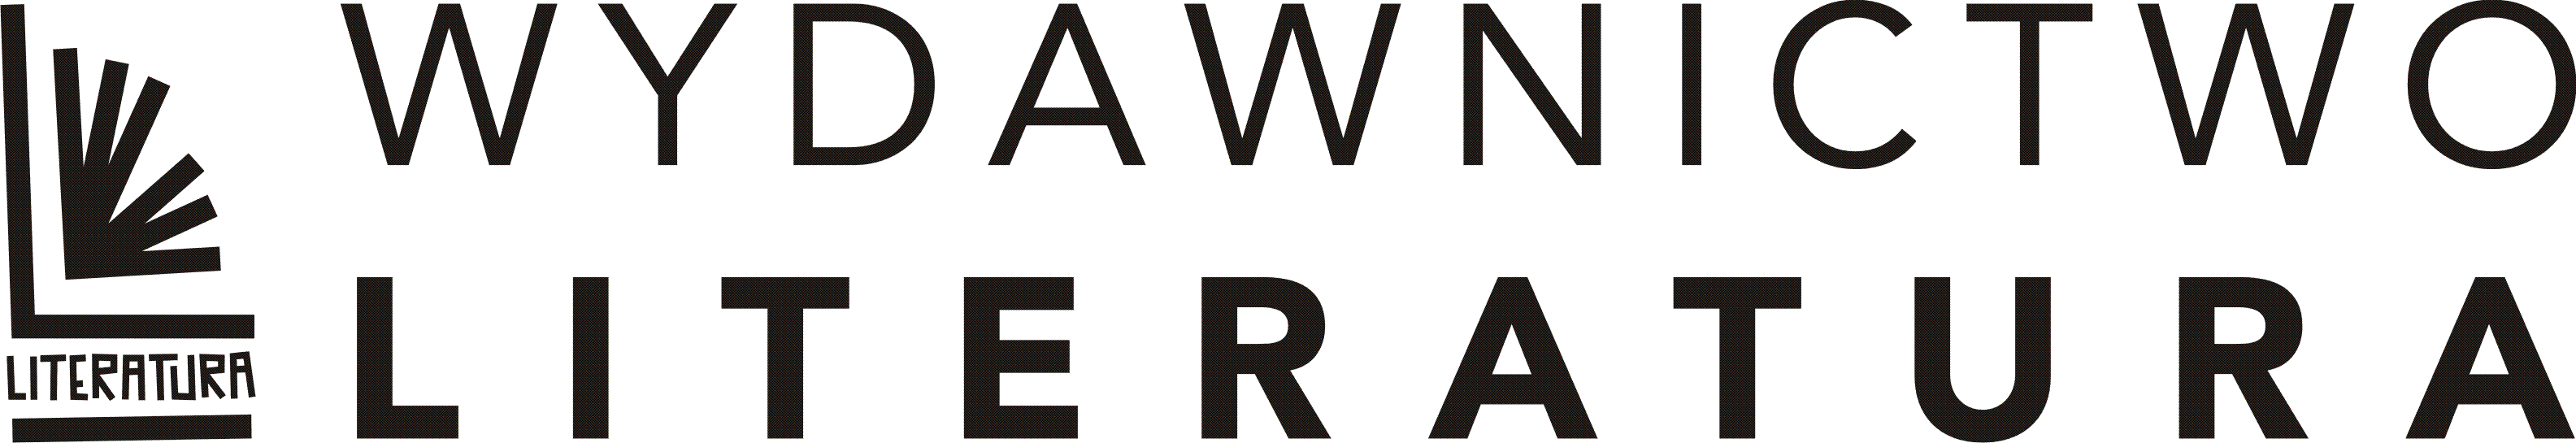 logo_Literatura